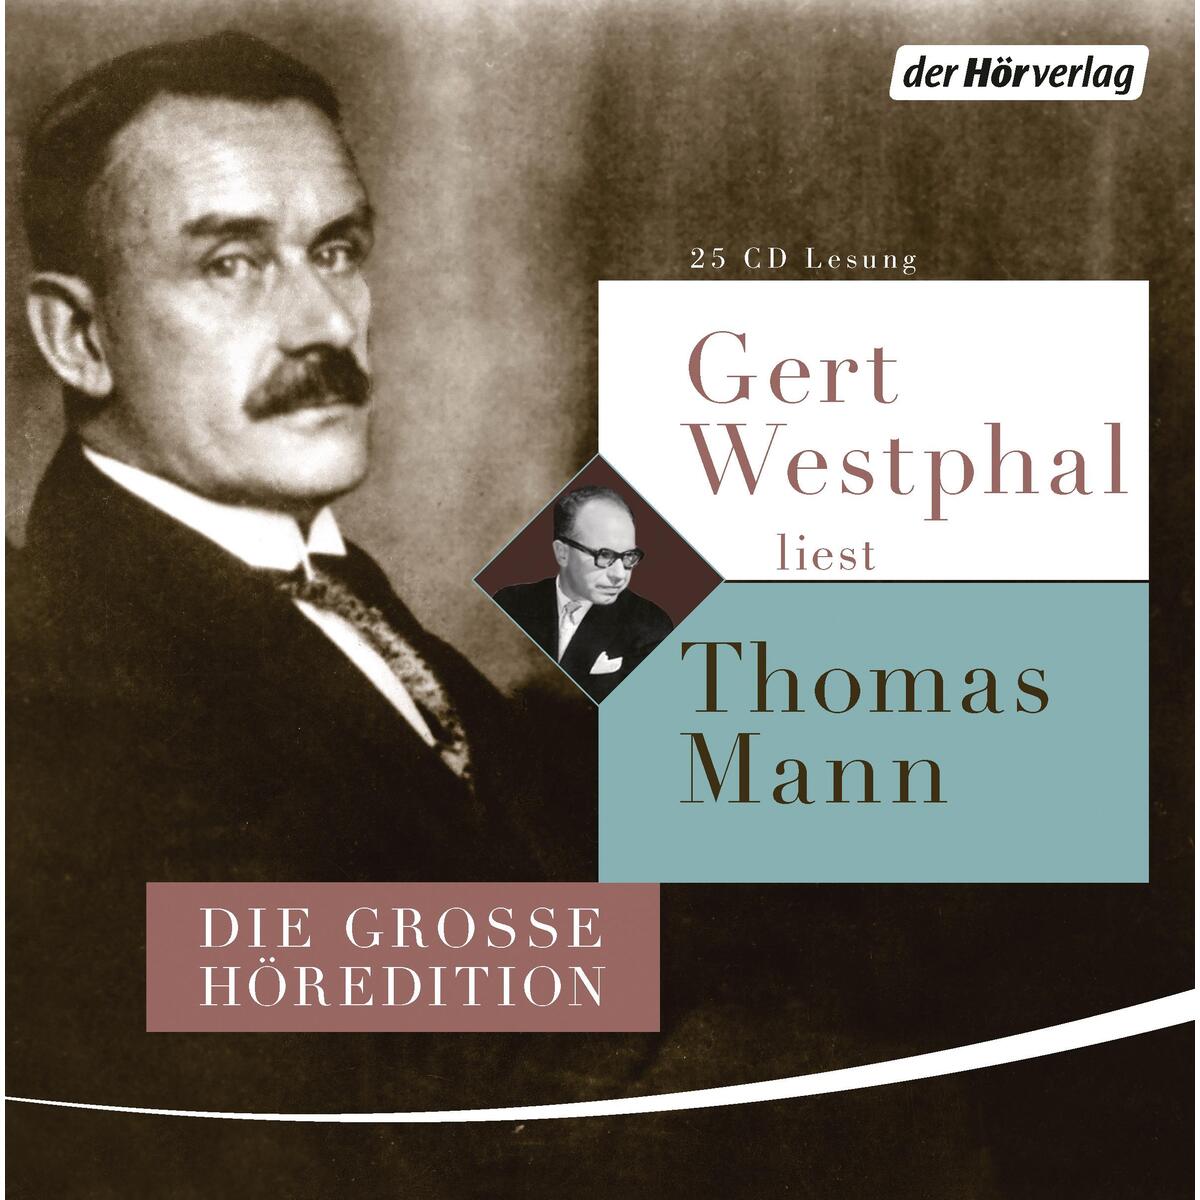 Gert Westphal liest Thomas Mann von Hoerverlag DHV Der